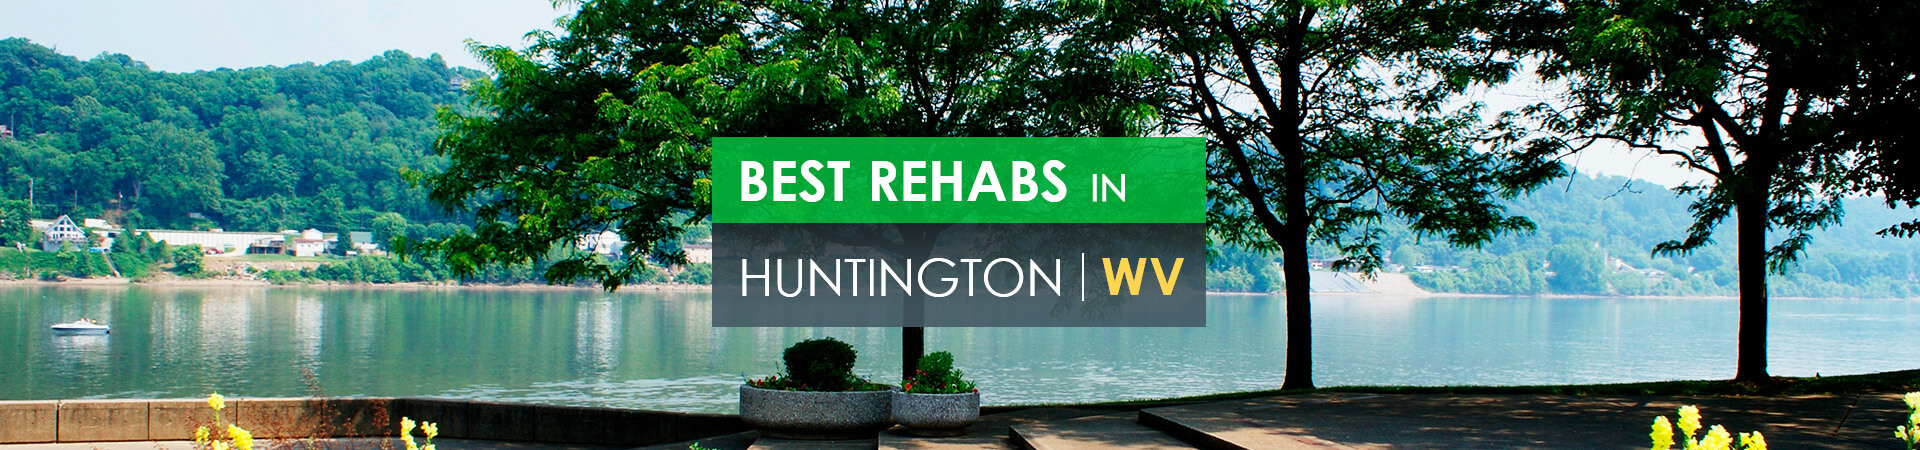 Best rehabs in Huntington, WV